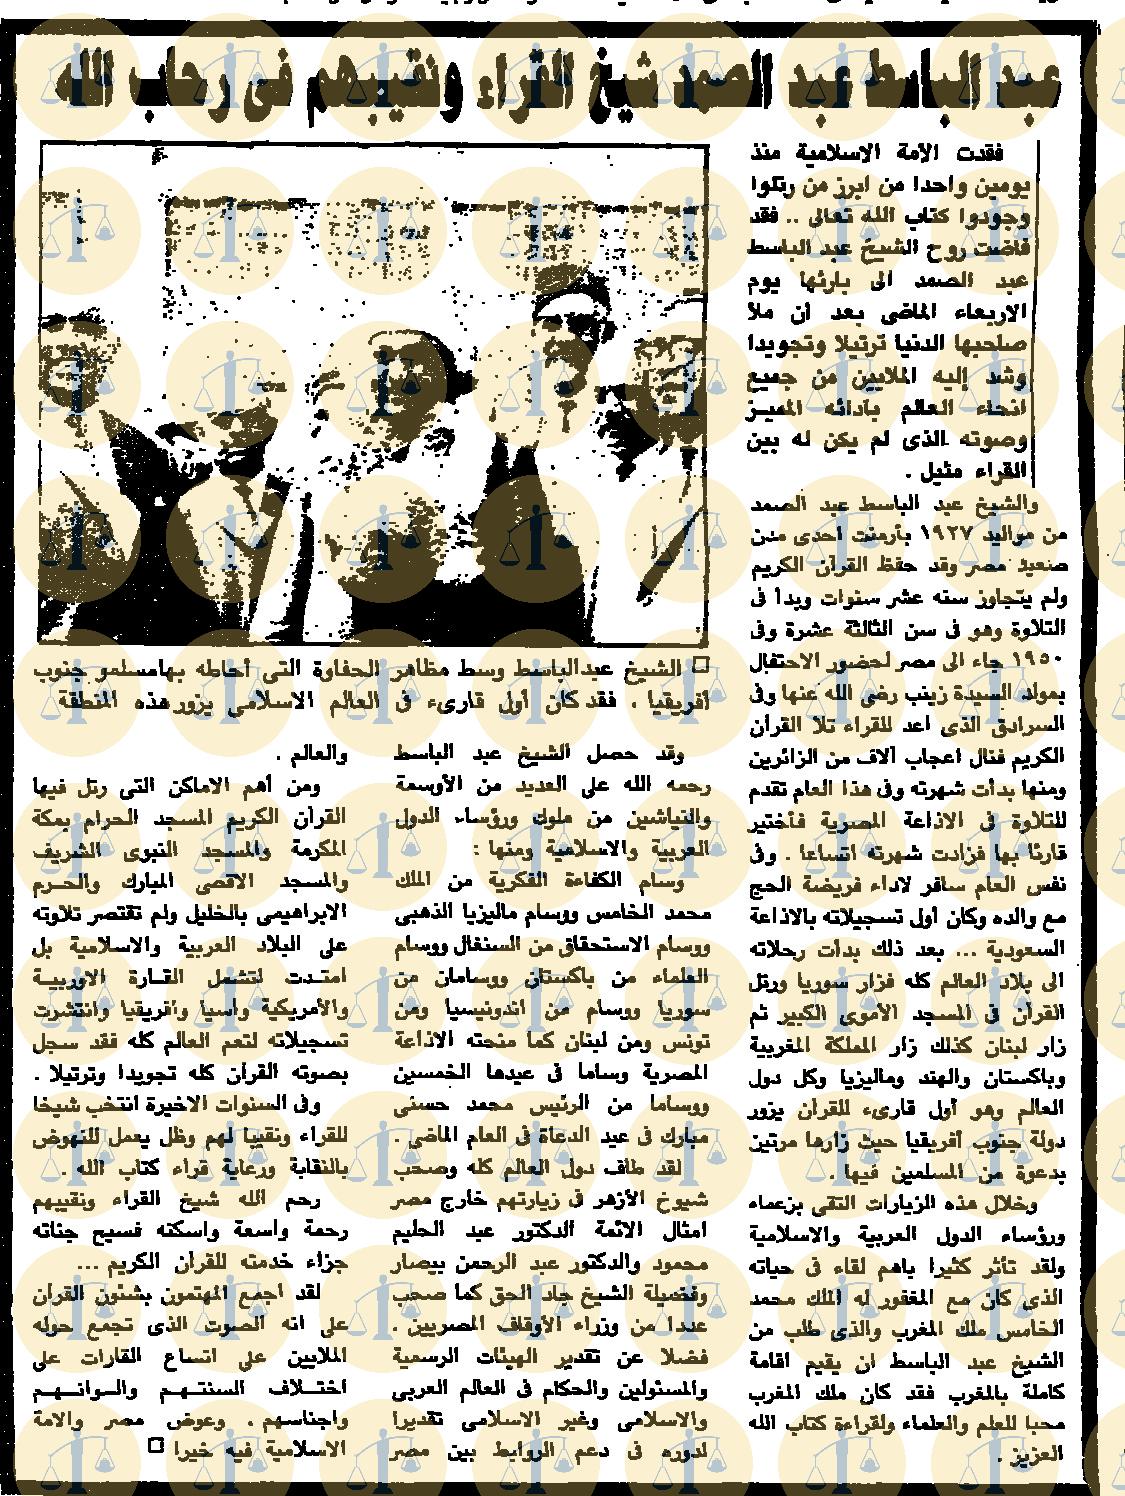 متابعة لوفاة المقرئ عبدالباسط عبدالصمد، نُشِر يوم 2 - 12 - 1988م - الأهرام، ص13